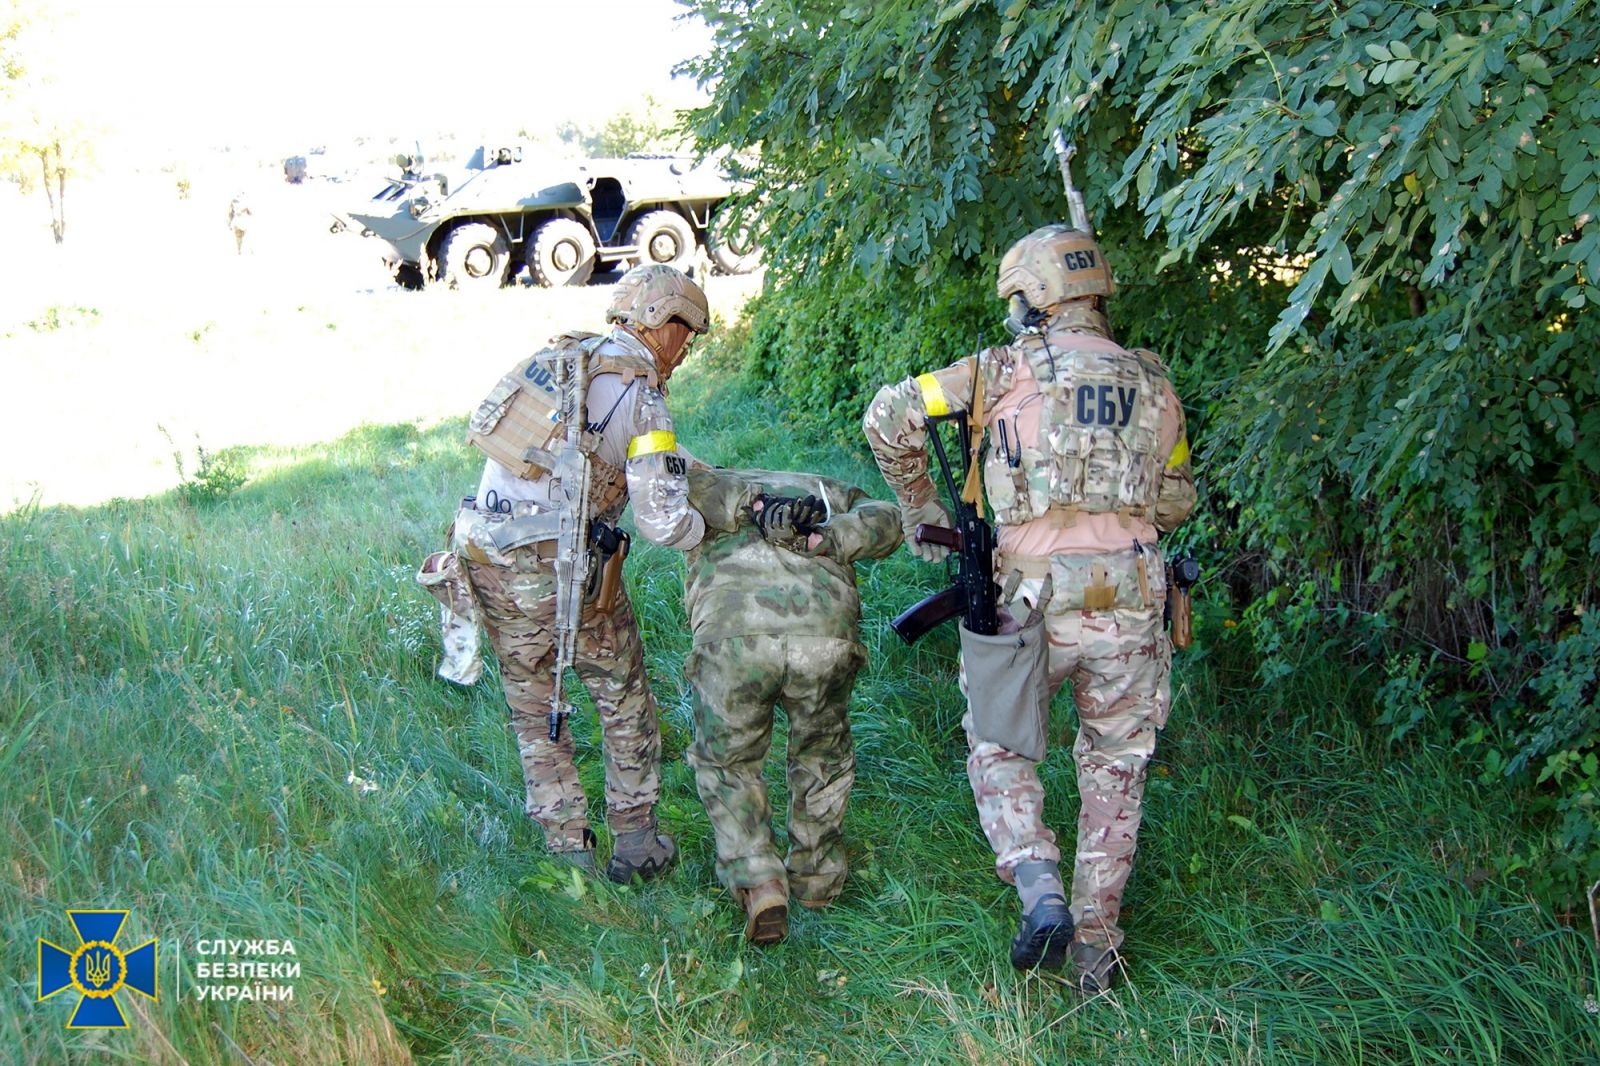 Обучение СБУ. Фото: Служба безопасности Украины